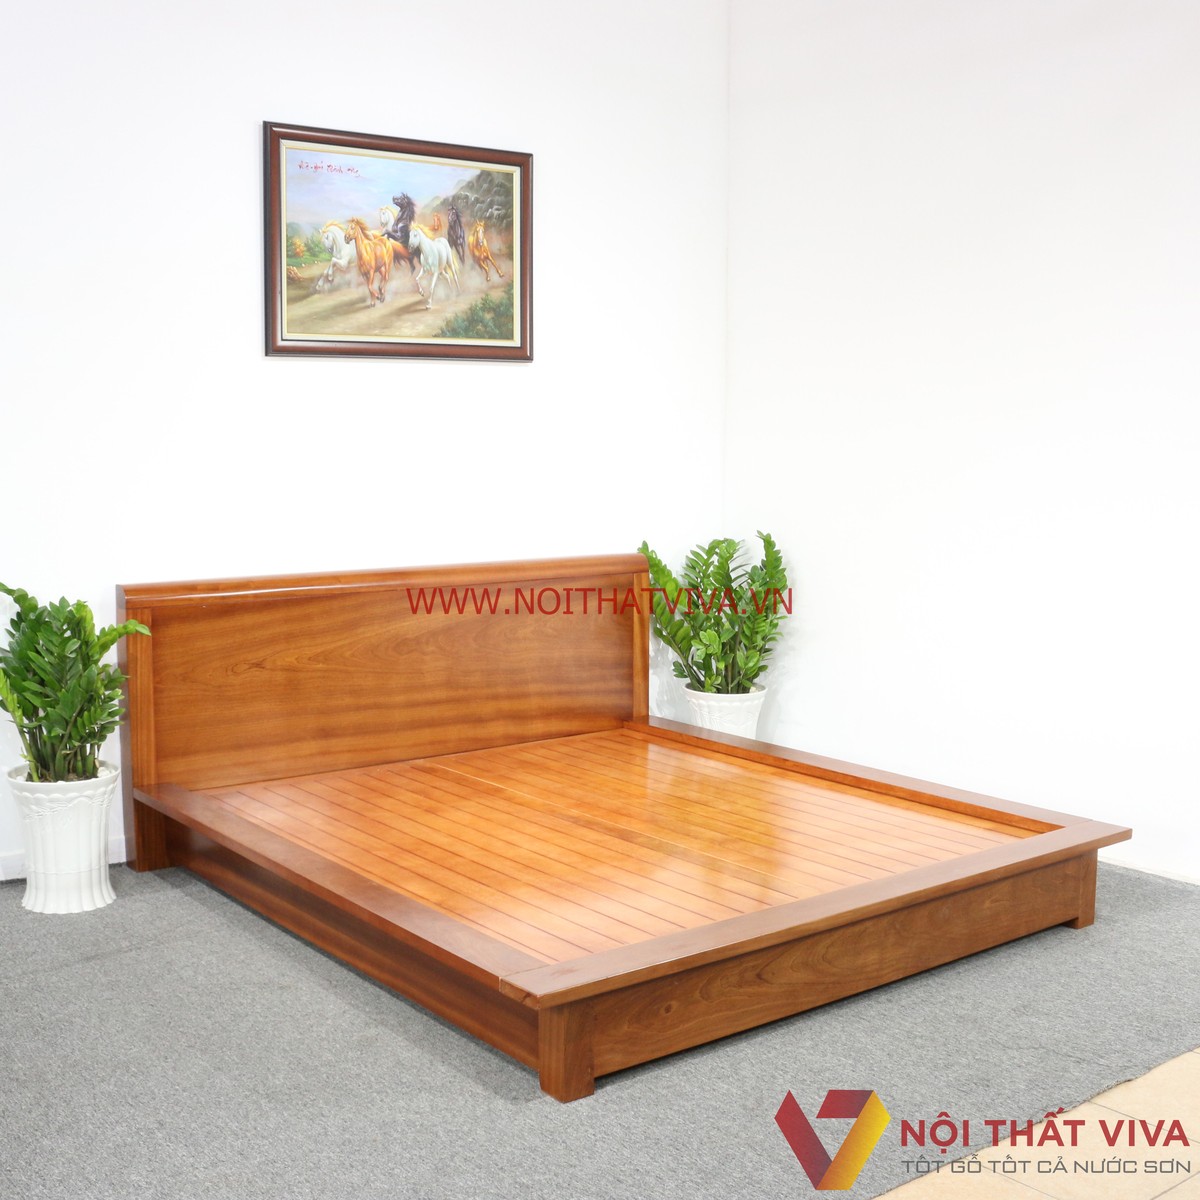 Bạn có biết giá giường ngủ gỗ xoan đào bao nhiêu chưa?